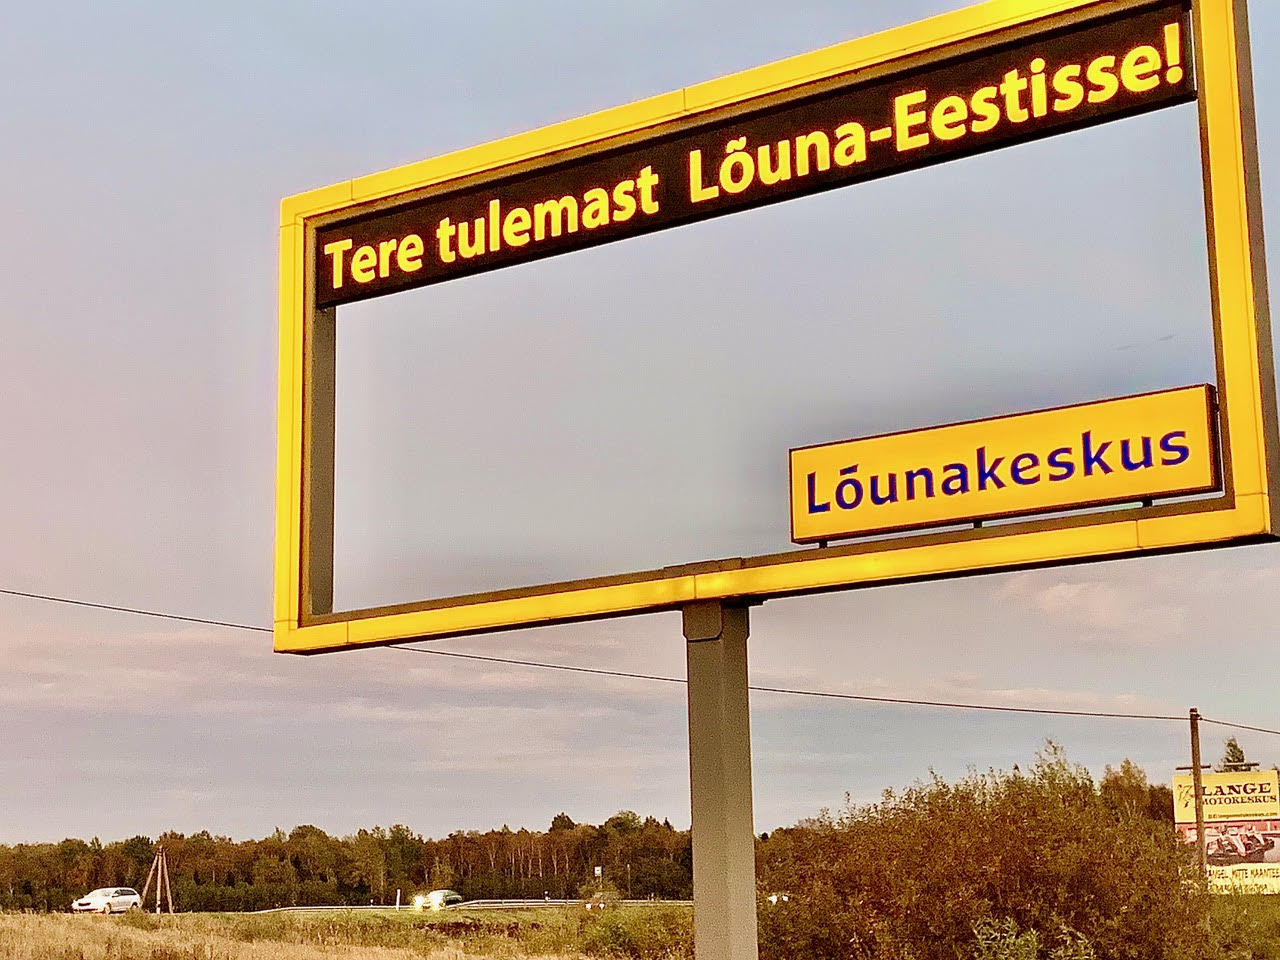 Tallinna-Tartu-Võru-Luhamaa maanteel on üle Kärevere silla sõites kollane ristkülik, kus Lõunakeskus teretab tulijaid. Siin on mitme ettevõtte reklaamid. Ainult mitte turistidele. Kas kevadine eriolukord tõesti ei pannud turismiametnikel päid tööle? 7. oktoobri Eesti Ekspress kirjutab, et Ettevõtluse Arendamise Sihtasutuse turismikeskuses töötab 33 inimest, ja küsib, et huvitav, mida nad teevad, sest koroonaviirus on turismiärile põntsu pannud? FOTO: Kalev Annom